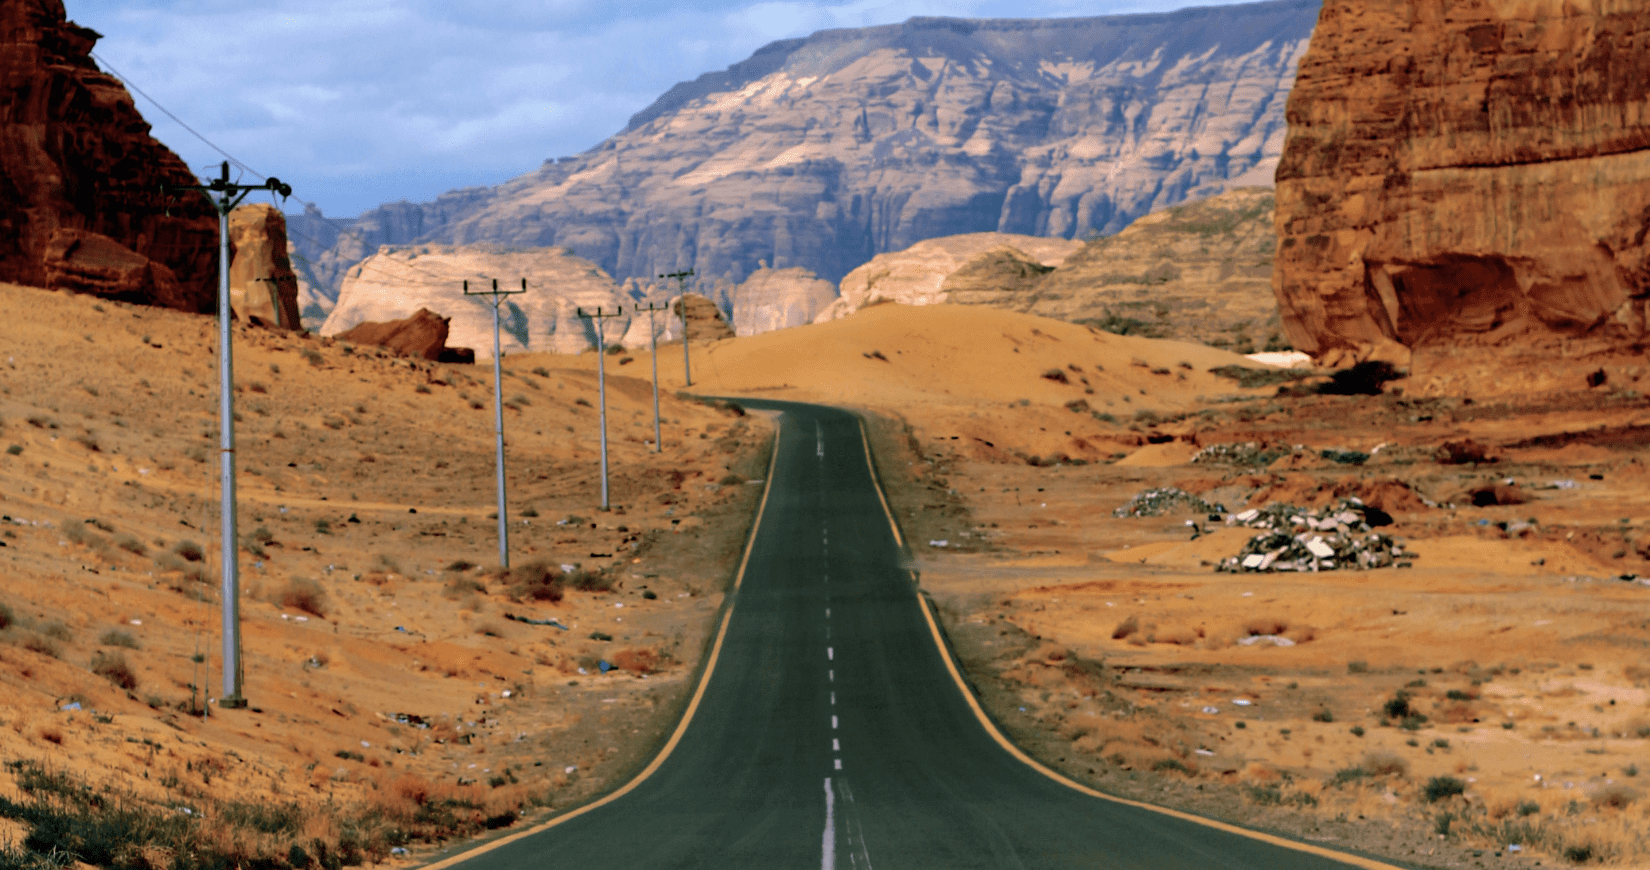 Road linking Saudi Arabia and Oman inaugurated